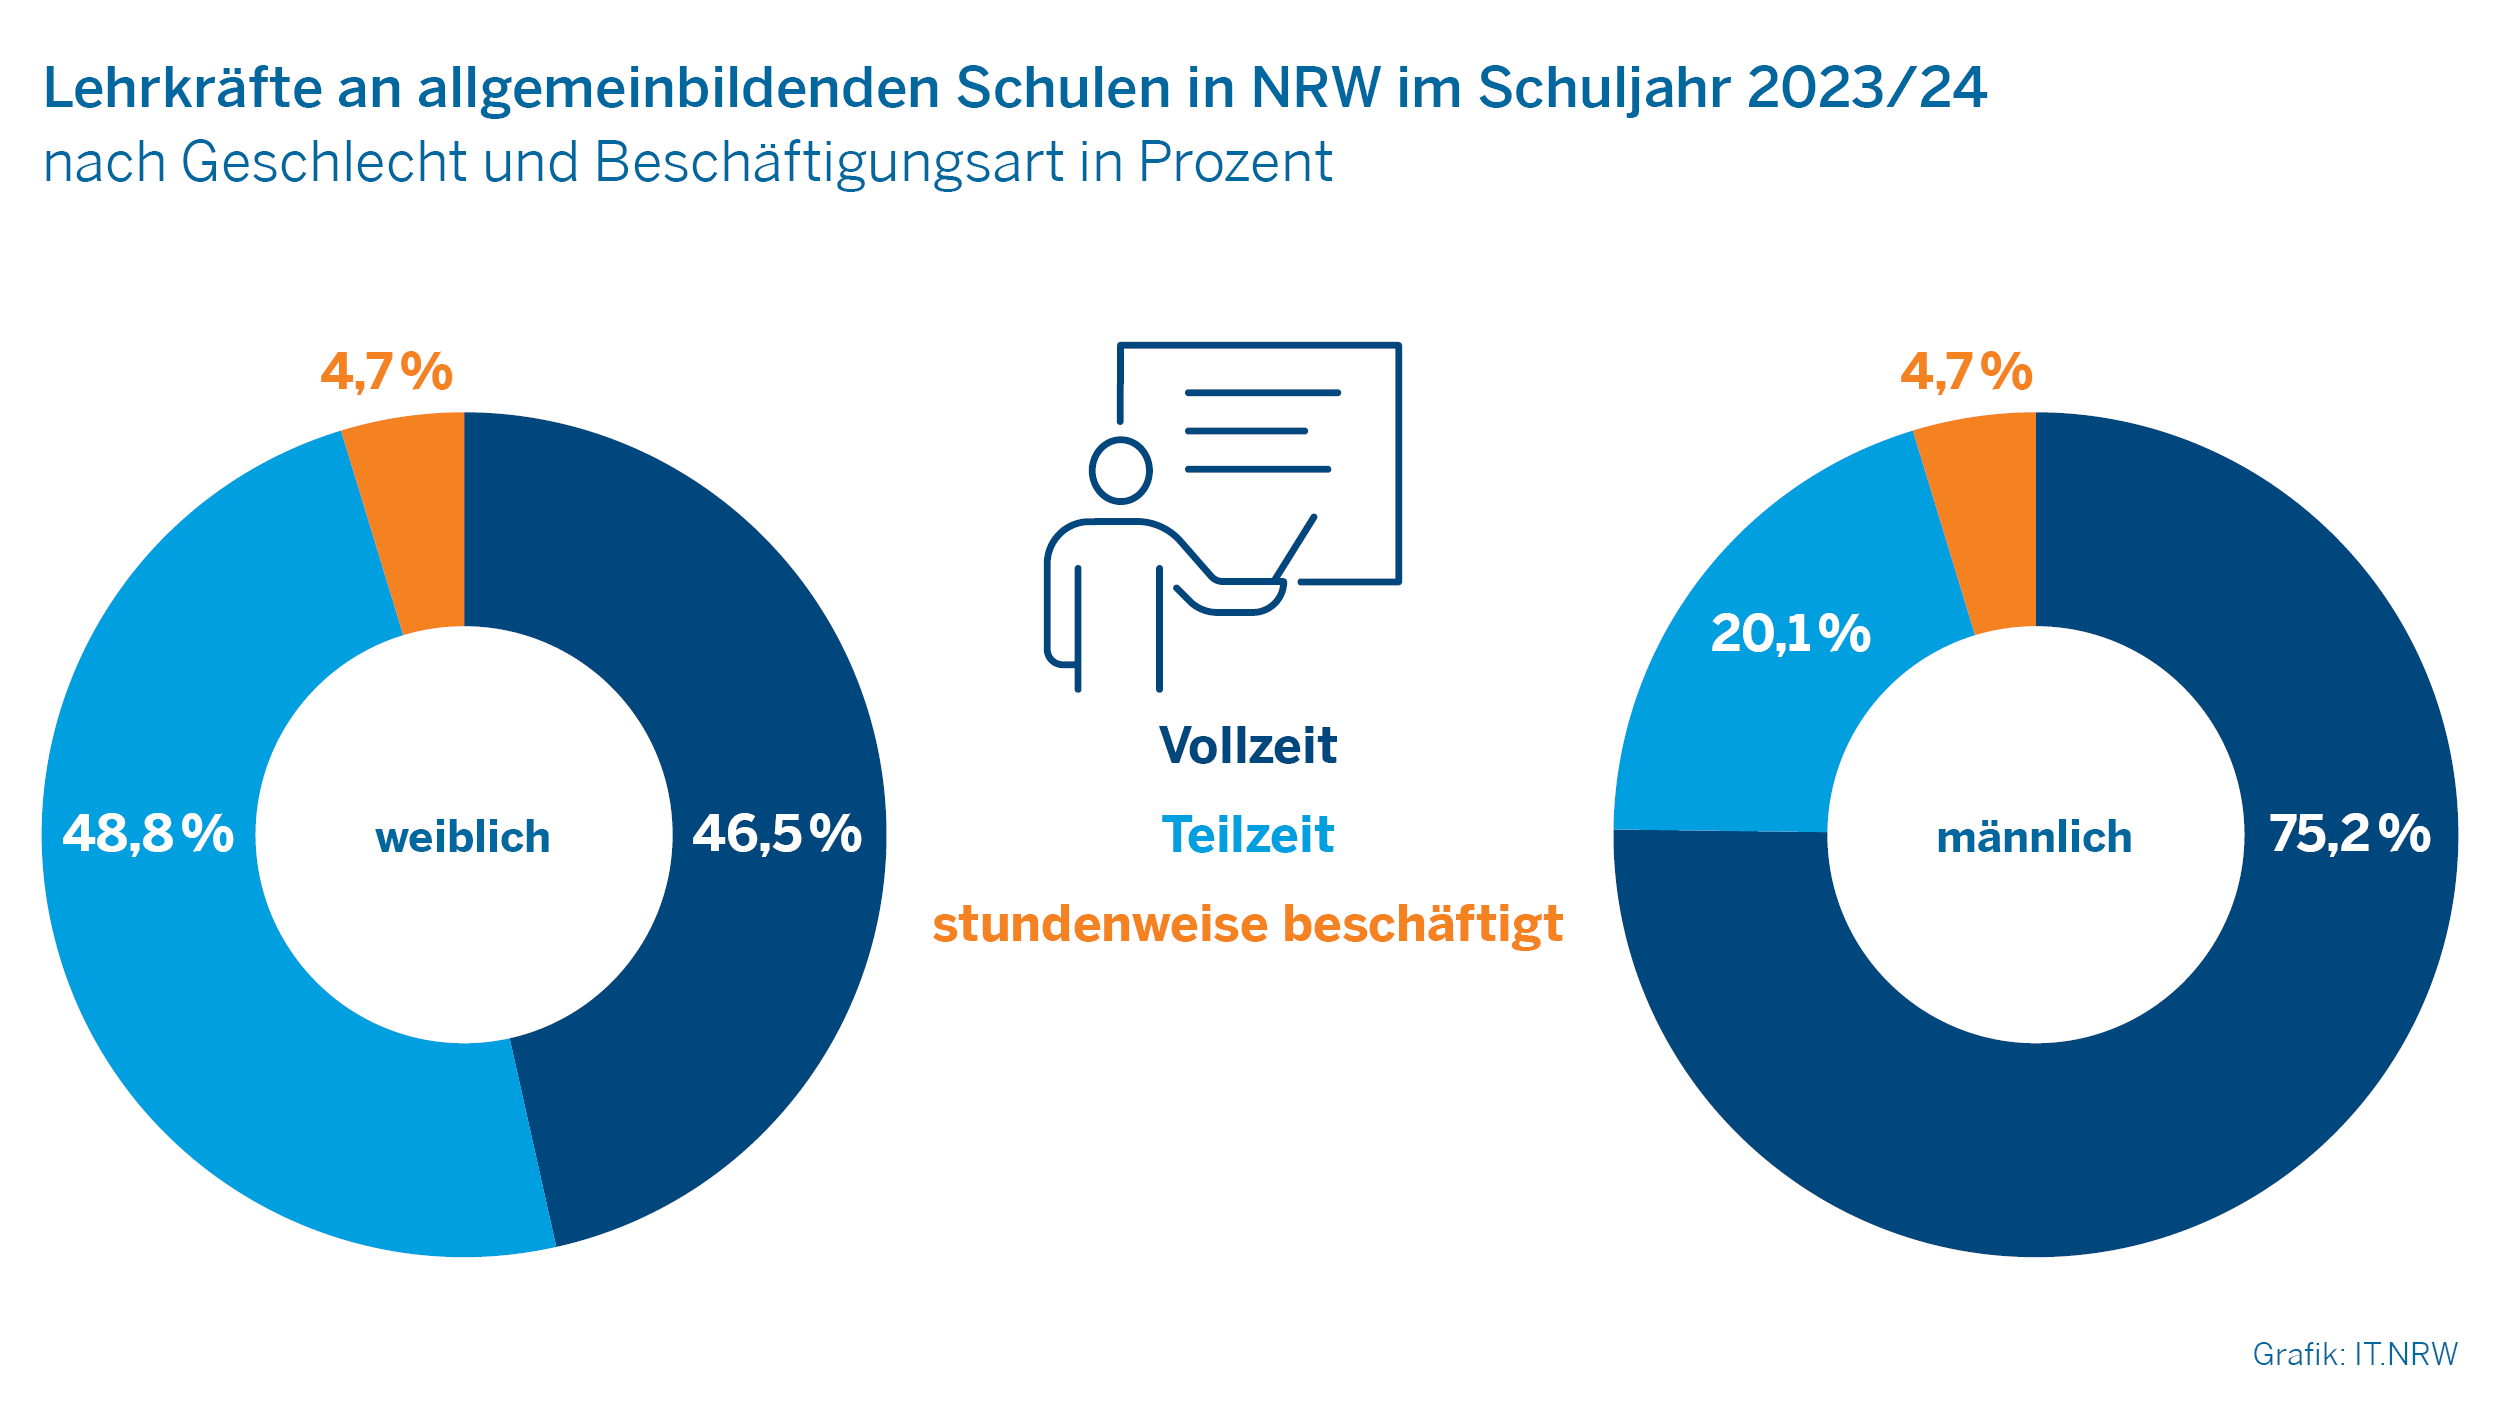 Lehrkräfte an allgemeinbildenden Schulen in NRW im Schuljahr 2023/24